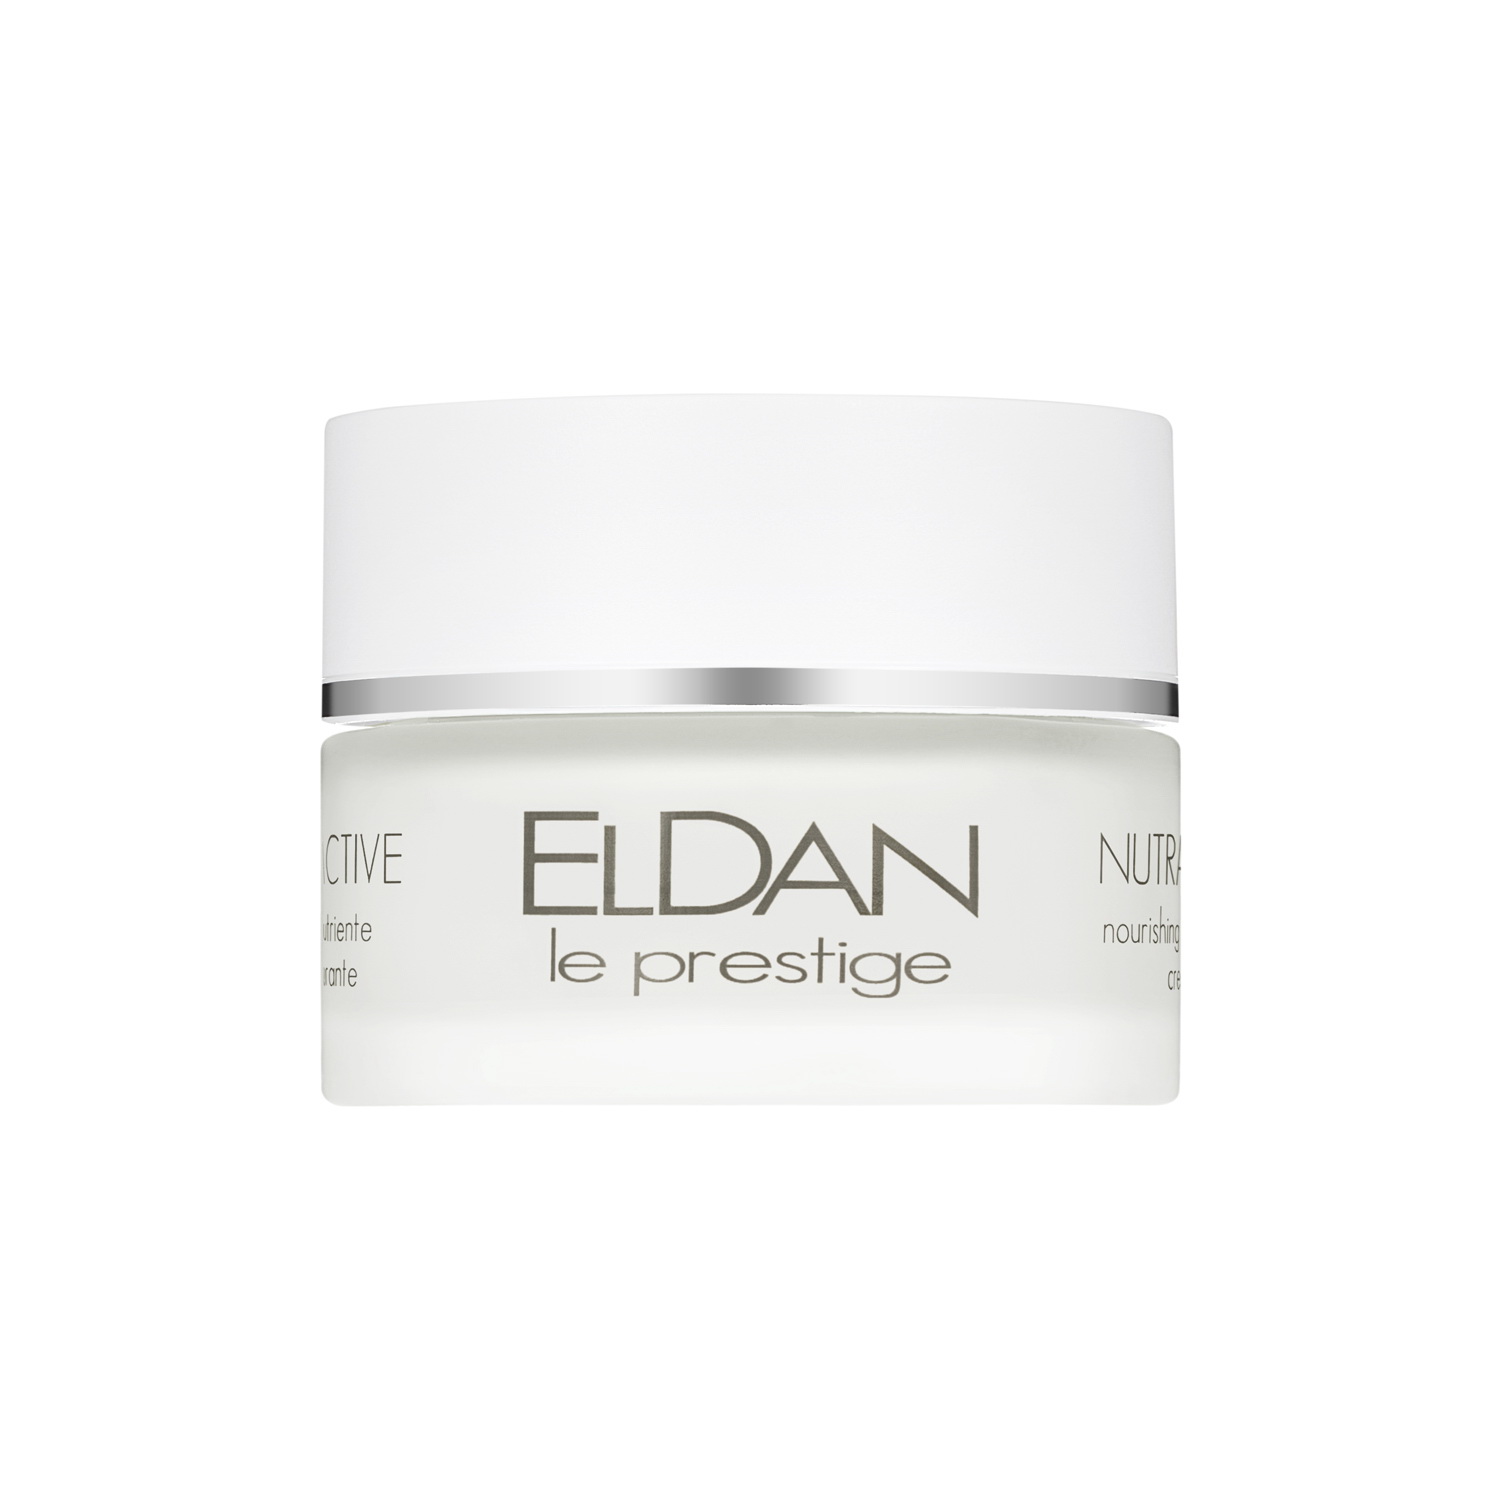 Крем для лица ELDAN Cosmetics Nourishing Repairing Cream питательный, 50 мл крем для рук весна витаминный главаптека 75 мл 6 штук